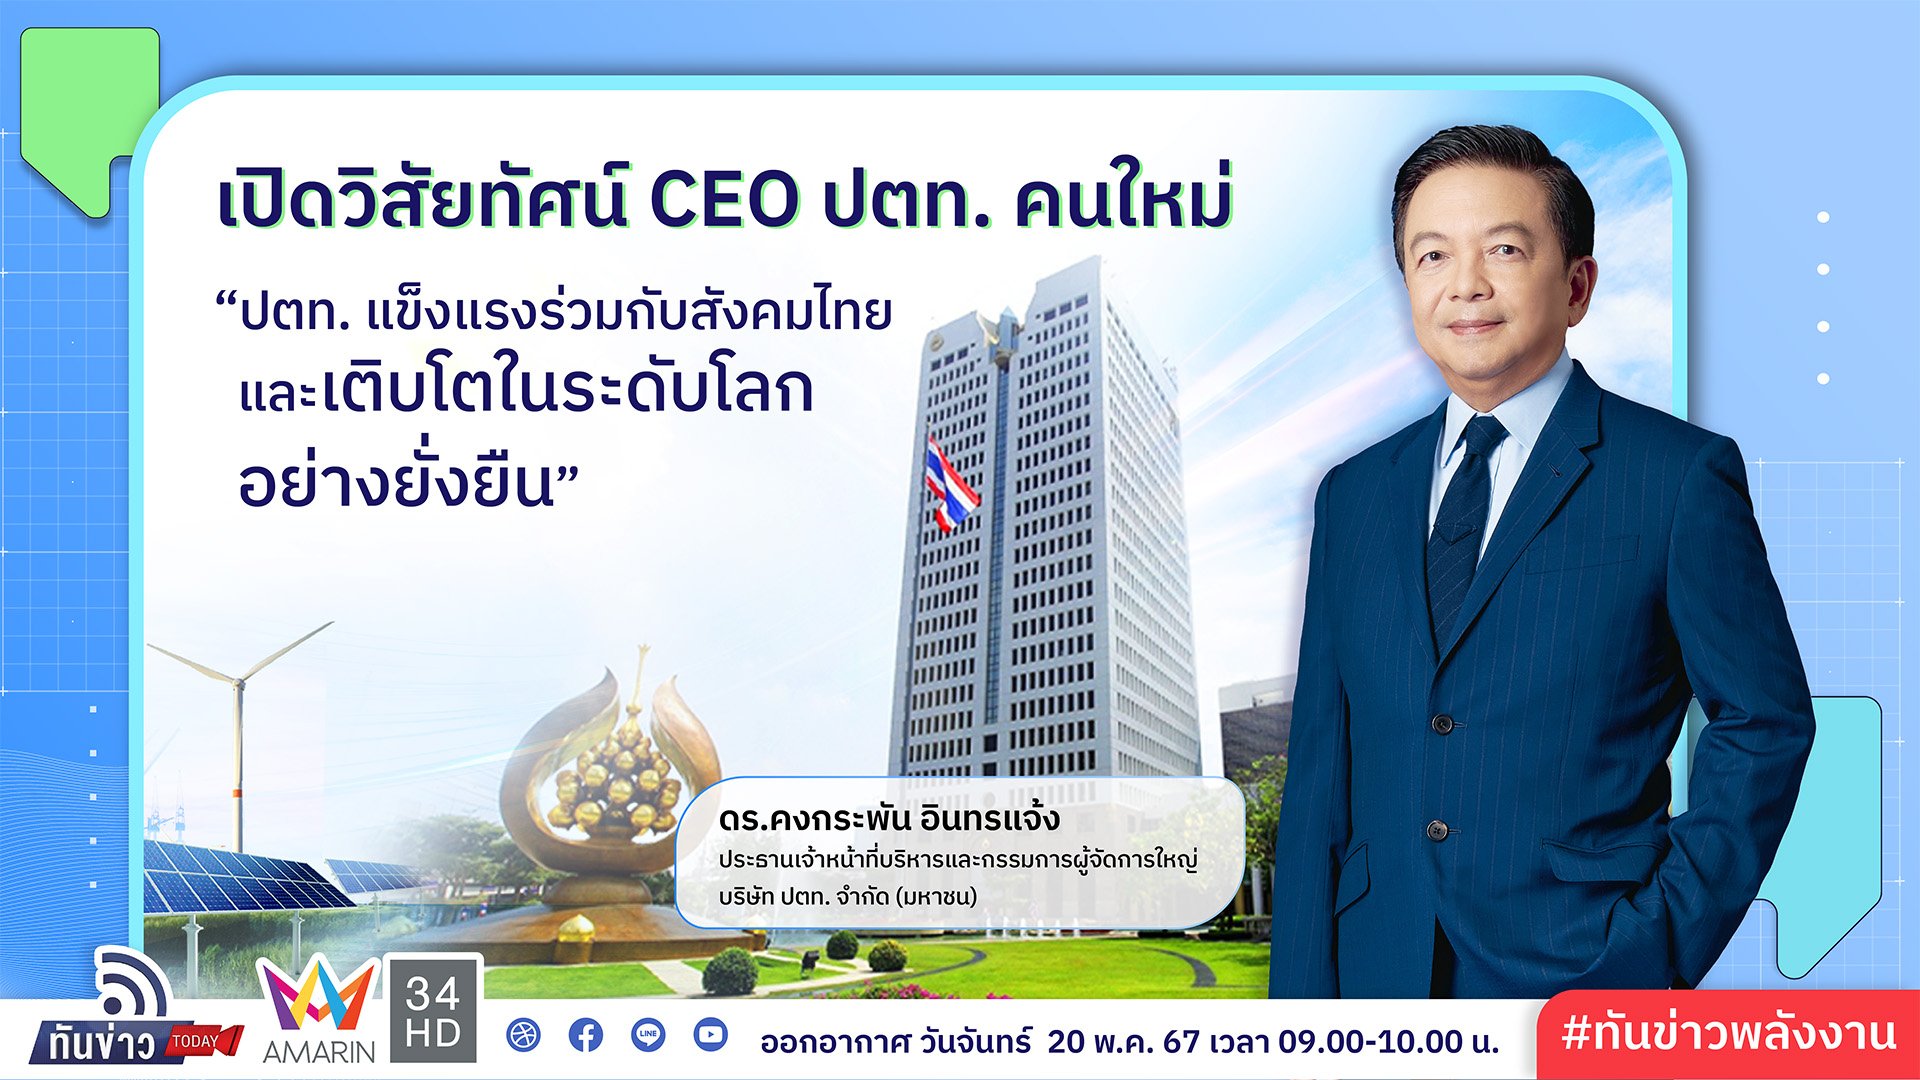 เปิดวิสัยทัศน์ CEO ปตท. คนใหม่ “ปตท. แข็งแรงร่วมกับสังคมไทยและเติบโตในระดับโลกอย่างยั่งยืน”